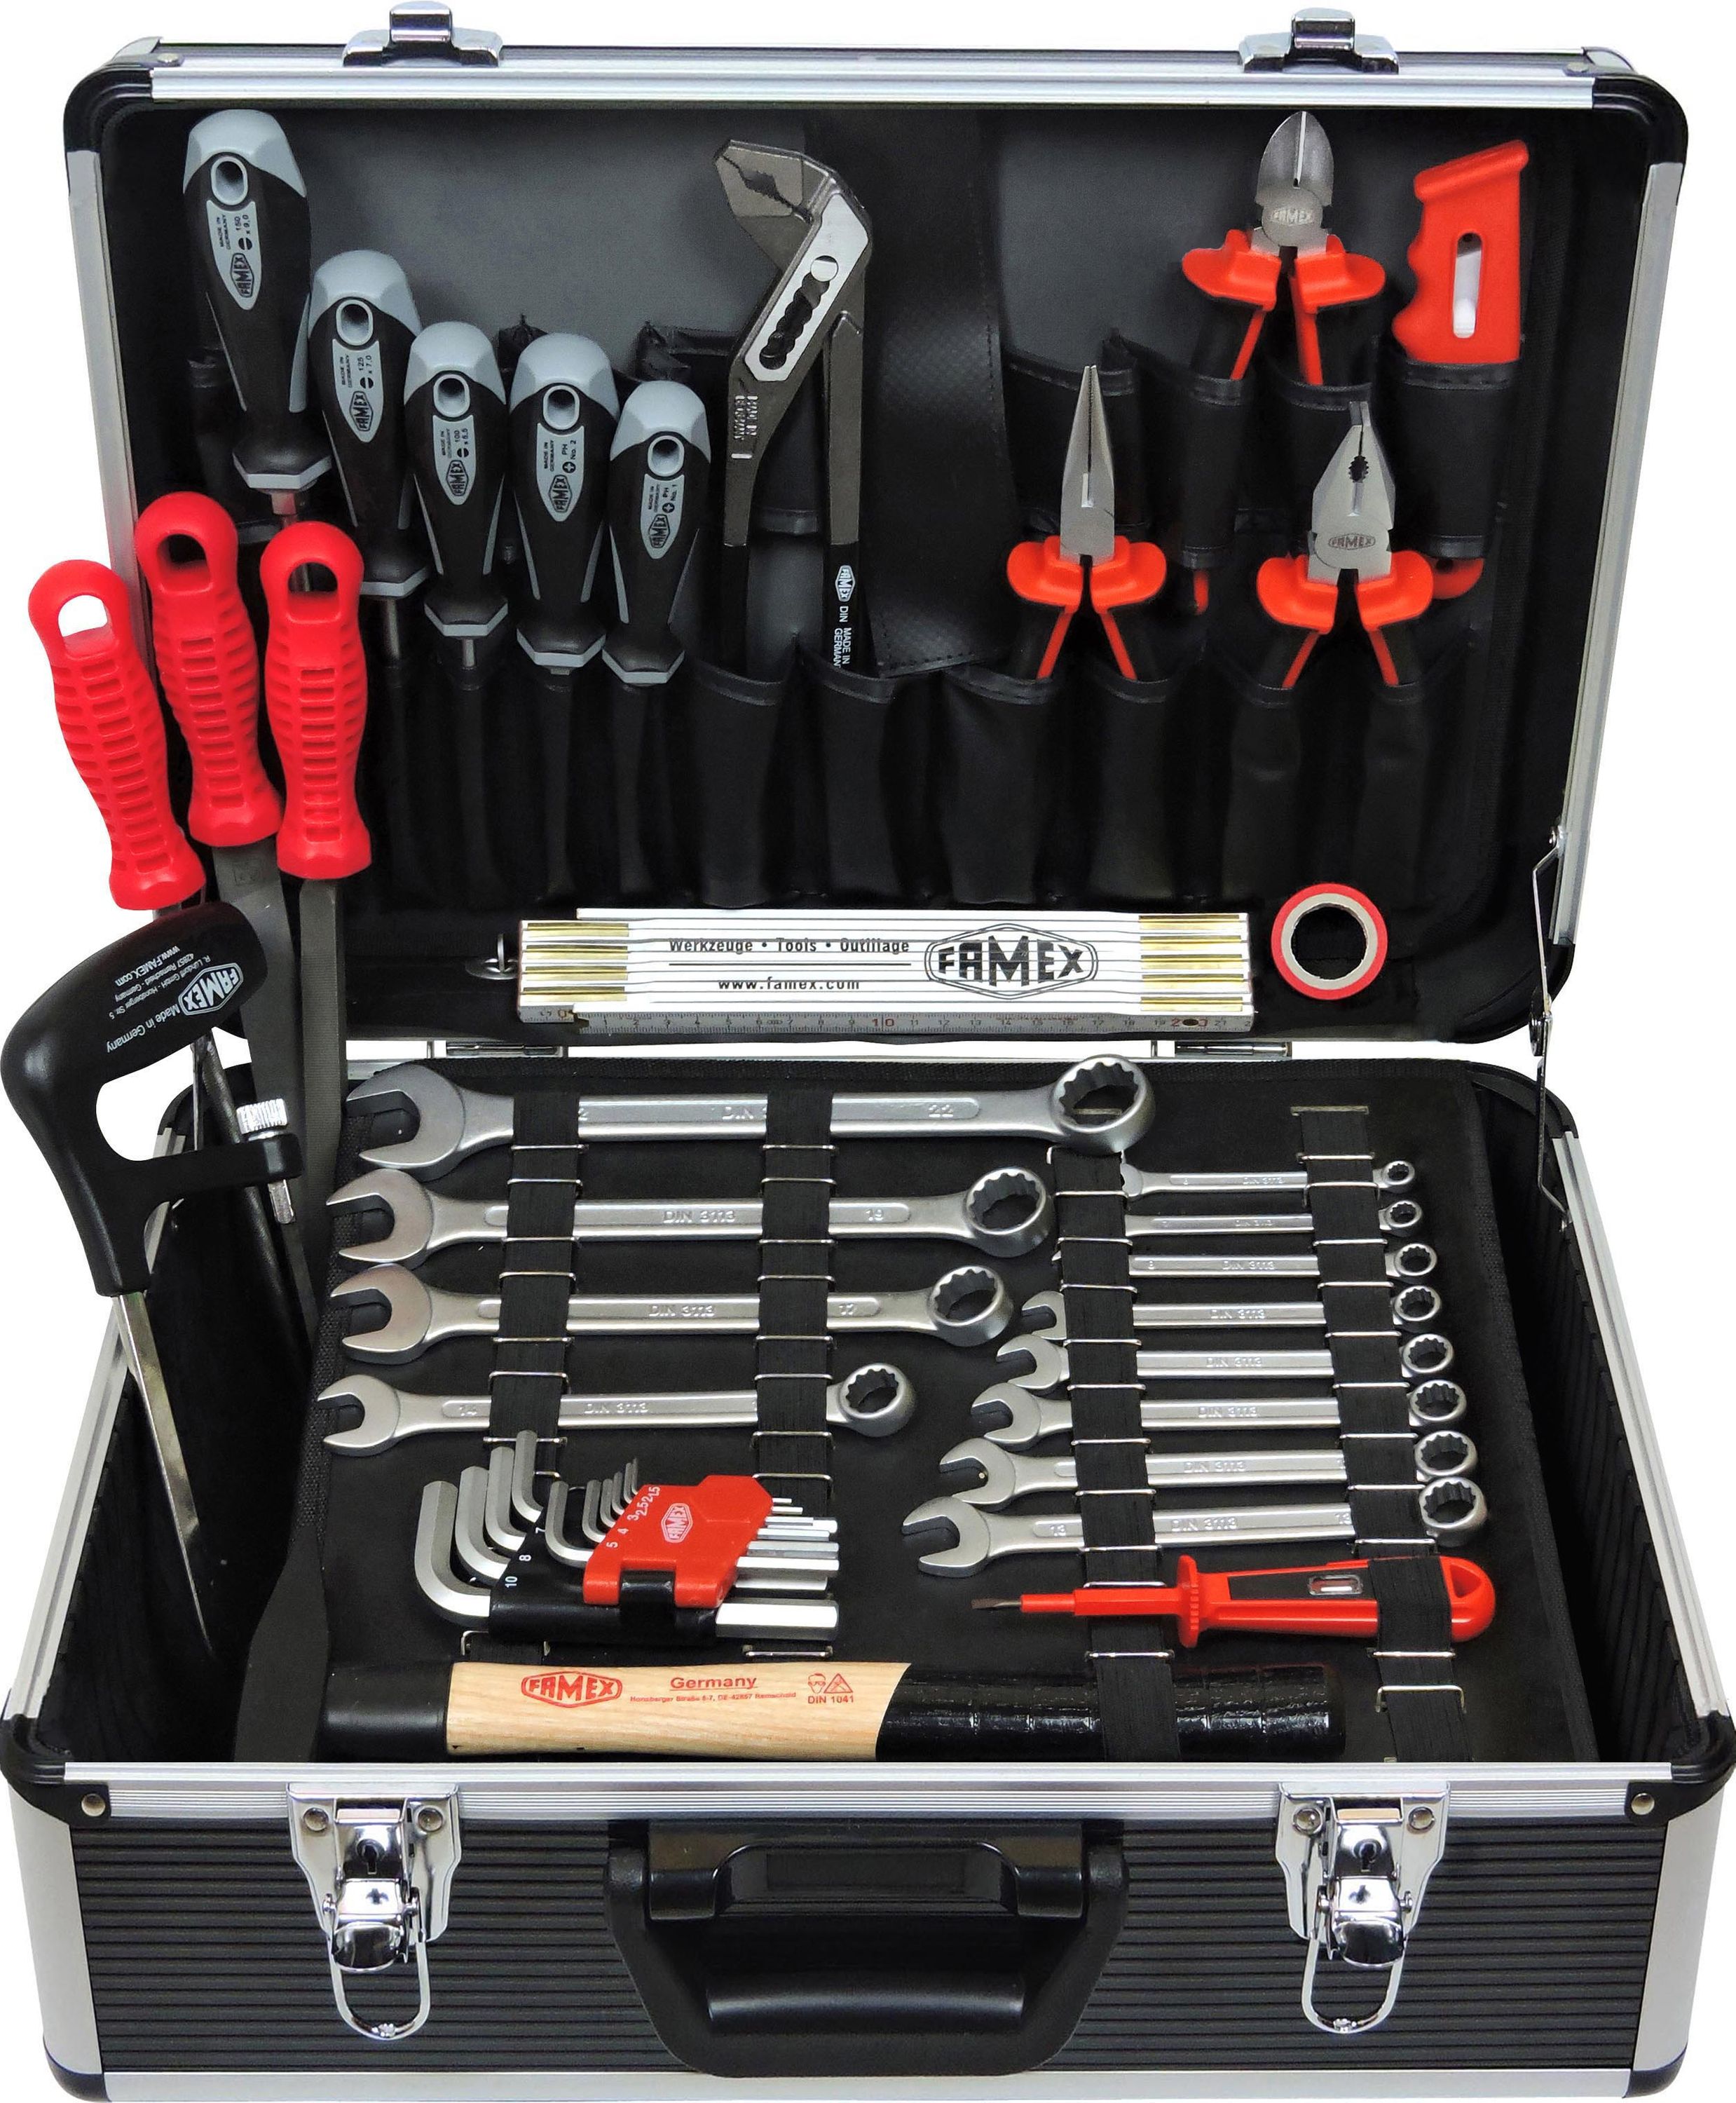 Profi Alu-Werkzeugkoffer 749-94 mit Werkzeugkasten - bestückt - FAMEX Werkzeug gefüllt